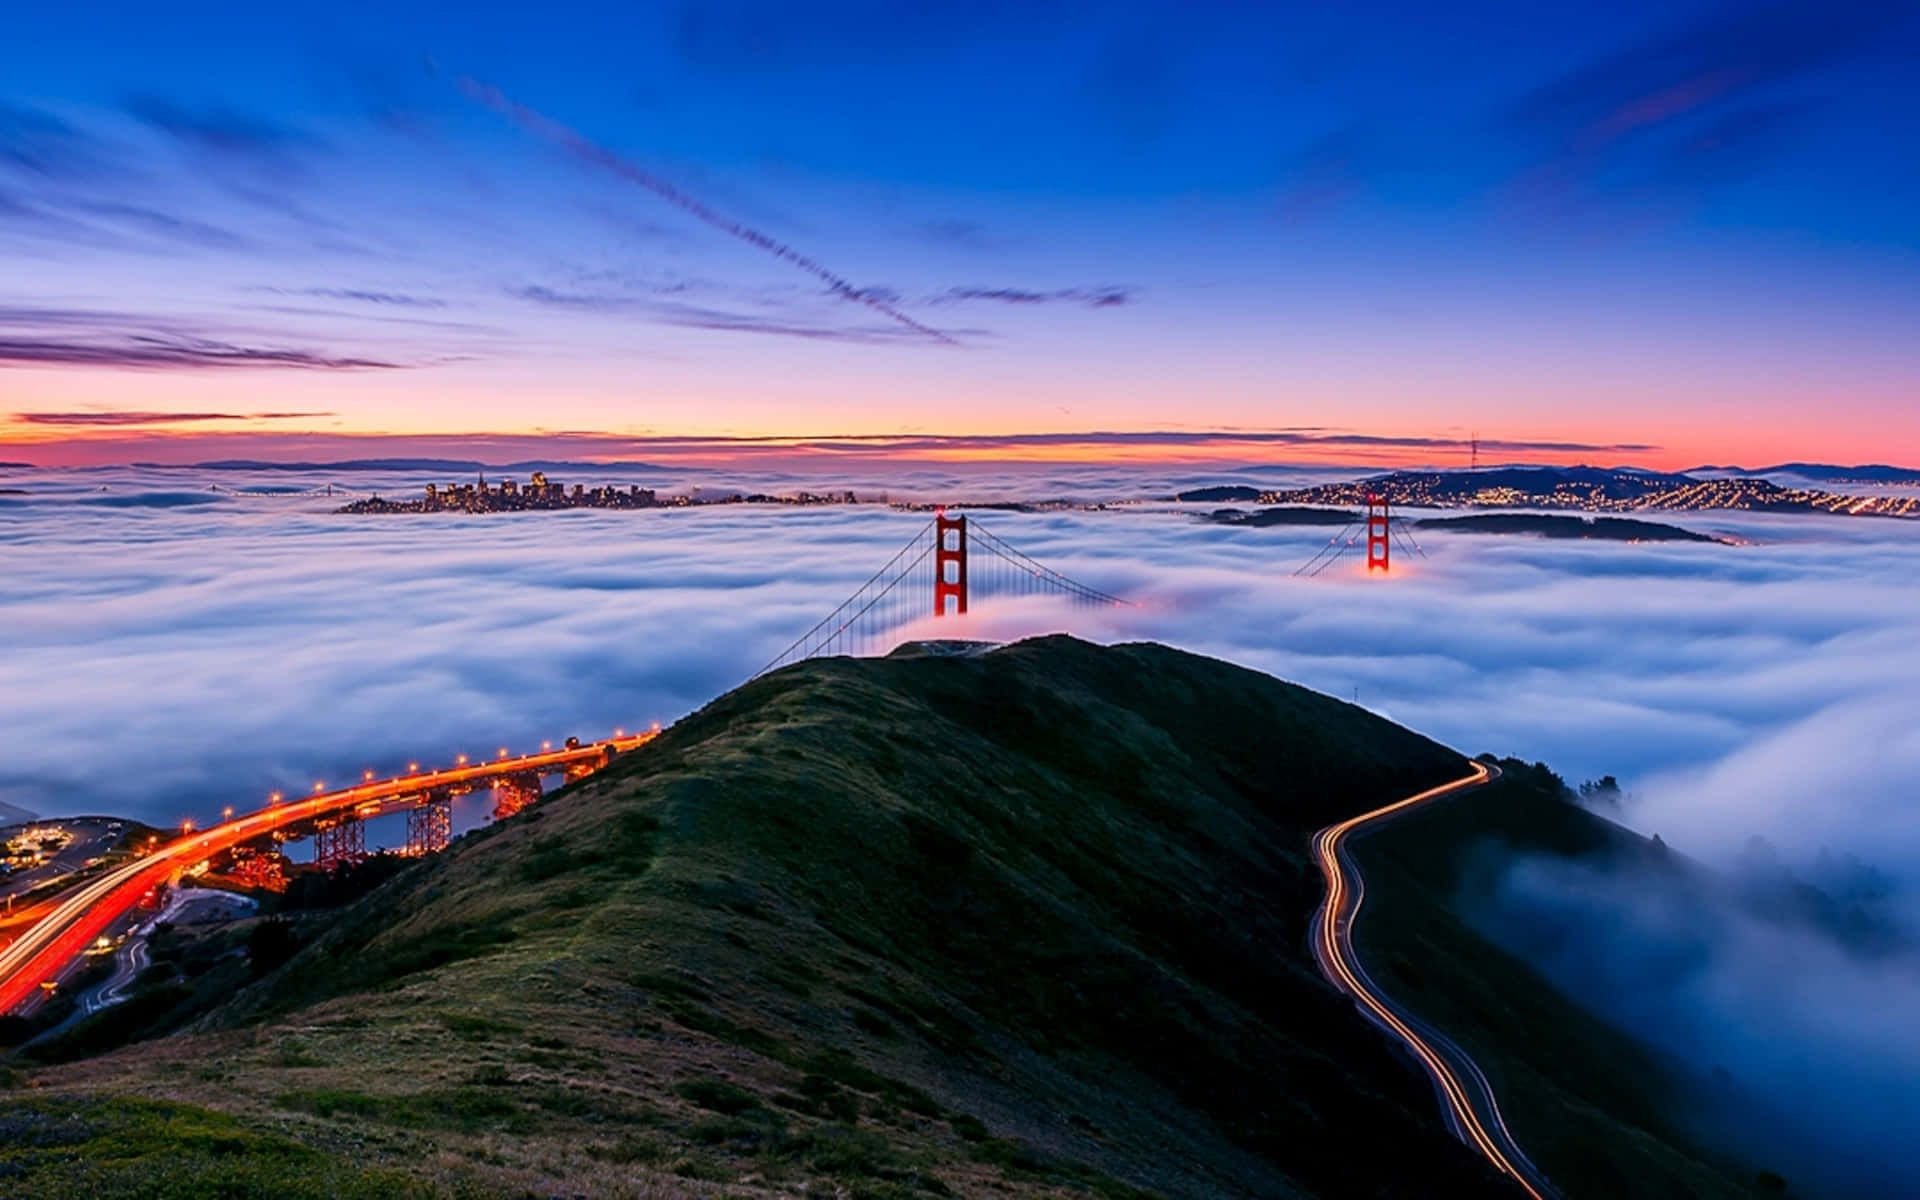 Labahía De San Francisco Cubierta De Niebla. El Mejor Fondo De Pantalla De San Francisco.